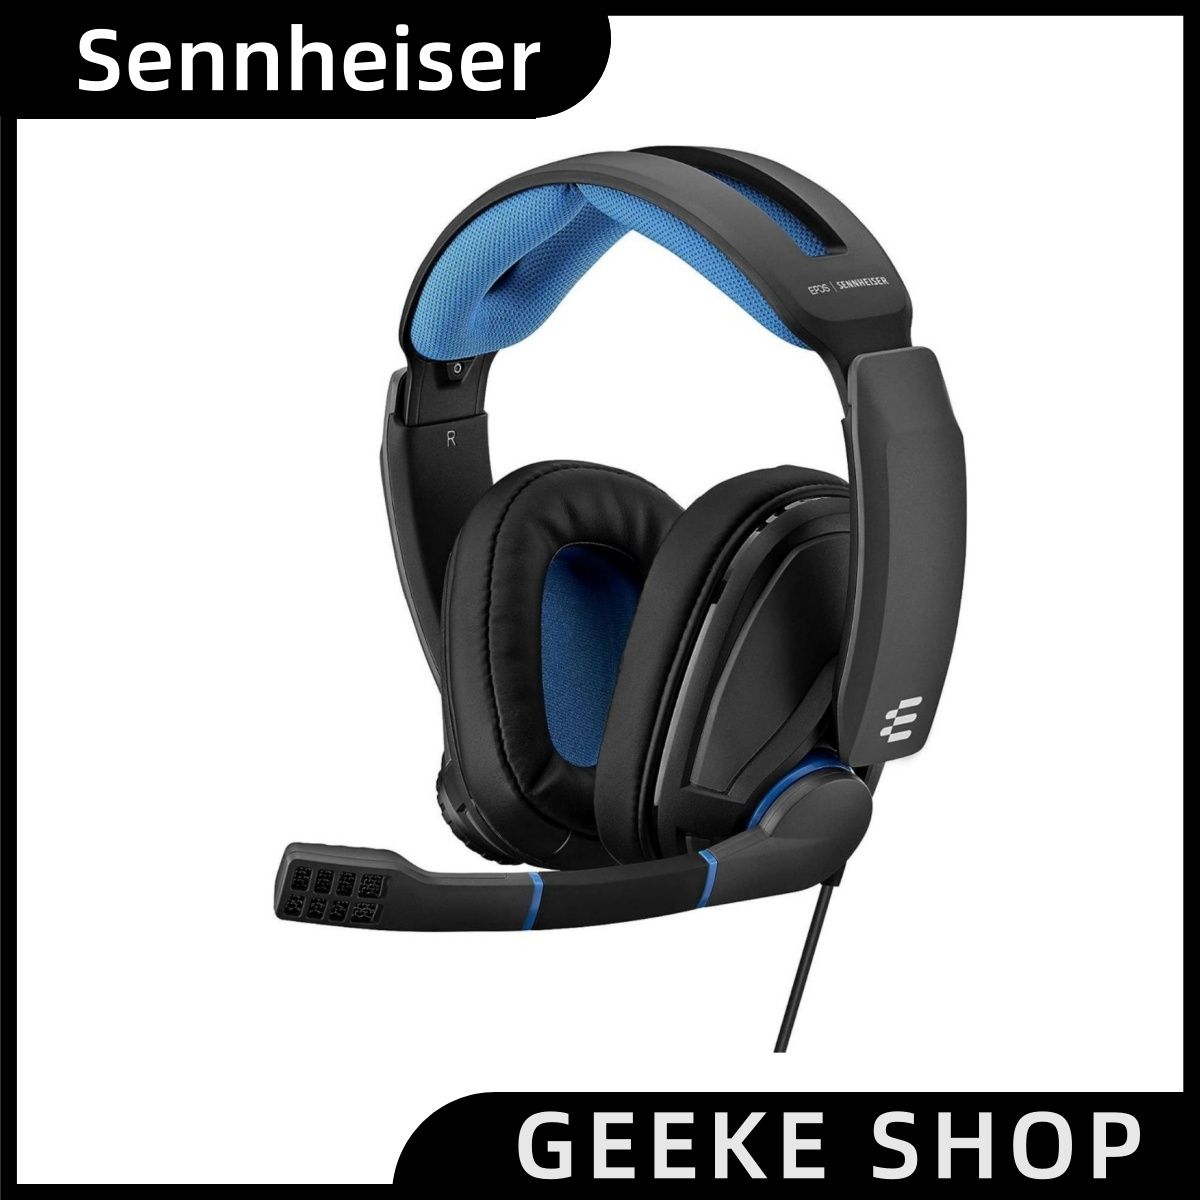 SennheiserИгровыенаушникипроводныесмикрофоном,3.5мм,синий,черный